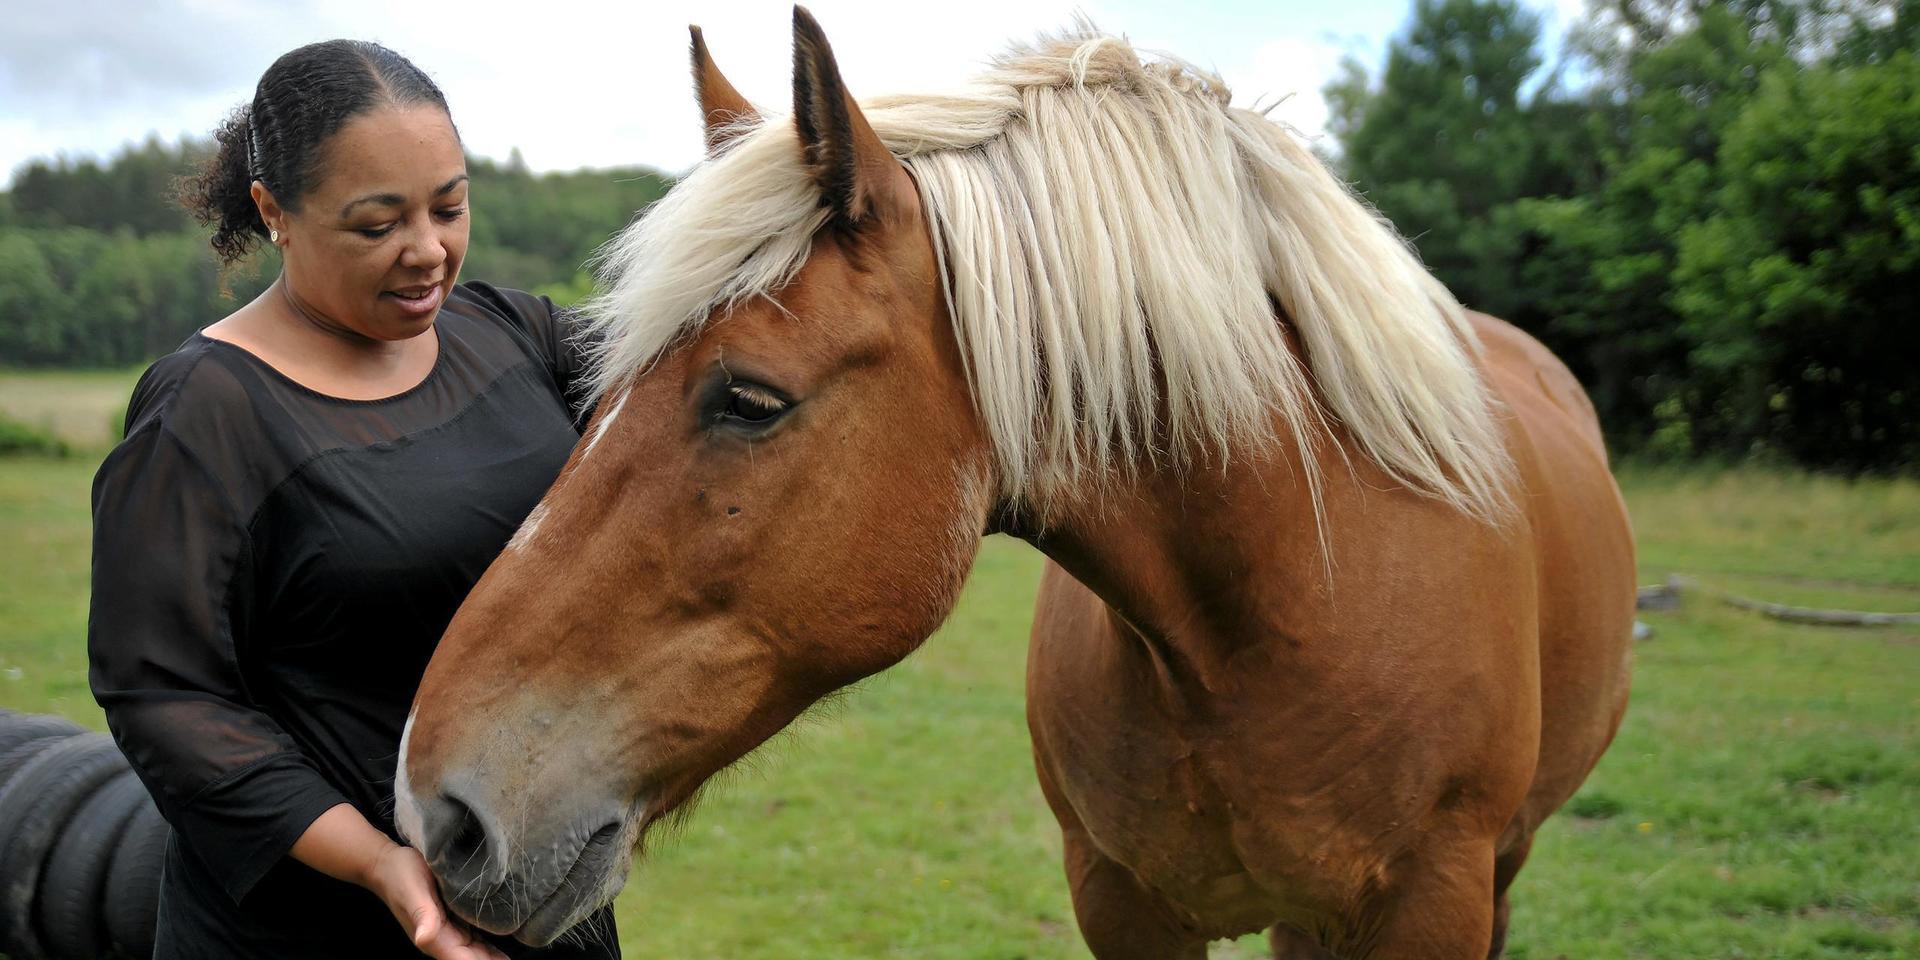 Efter att Ann-Charlotte Addo drabbats av utmattningssyndrom var det först när hästarna kom in i rehabiliteringen som hon började hitta tillbaka till friskhet och glädje. ”Genom ridningen fick jag fokusera på annat än att jag var sjuk”, säger hon.